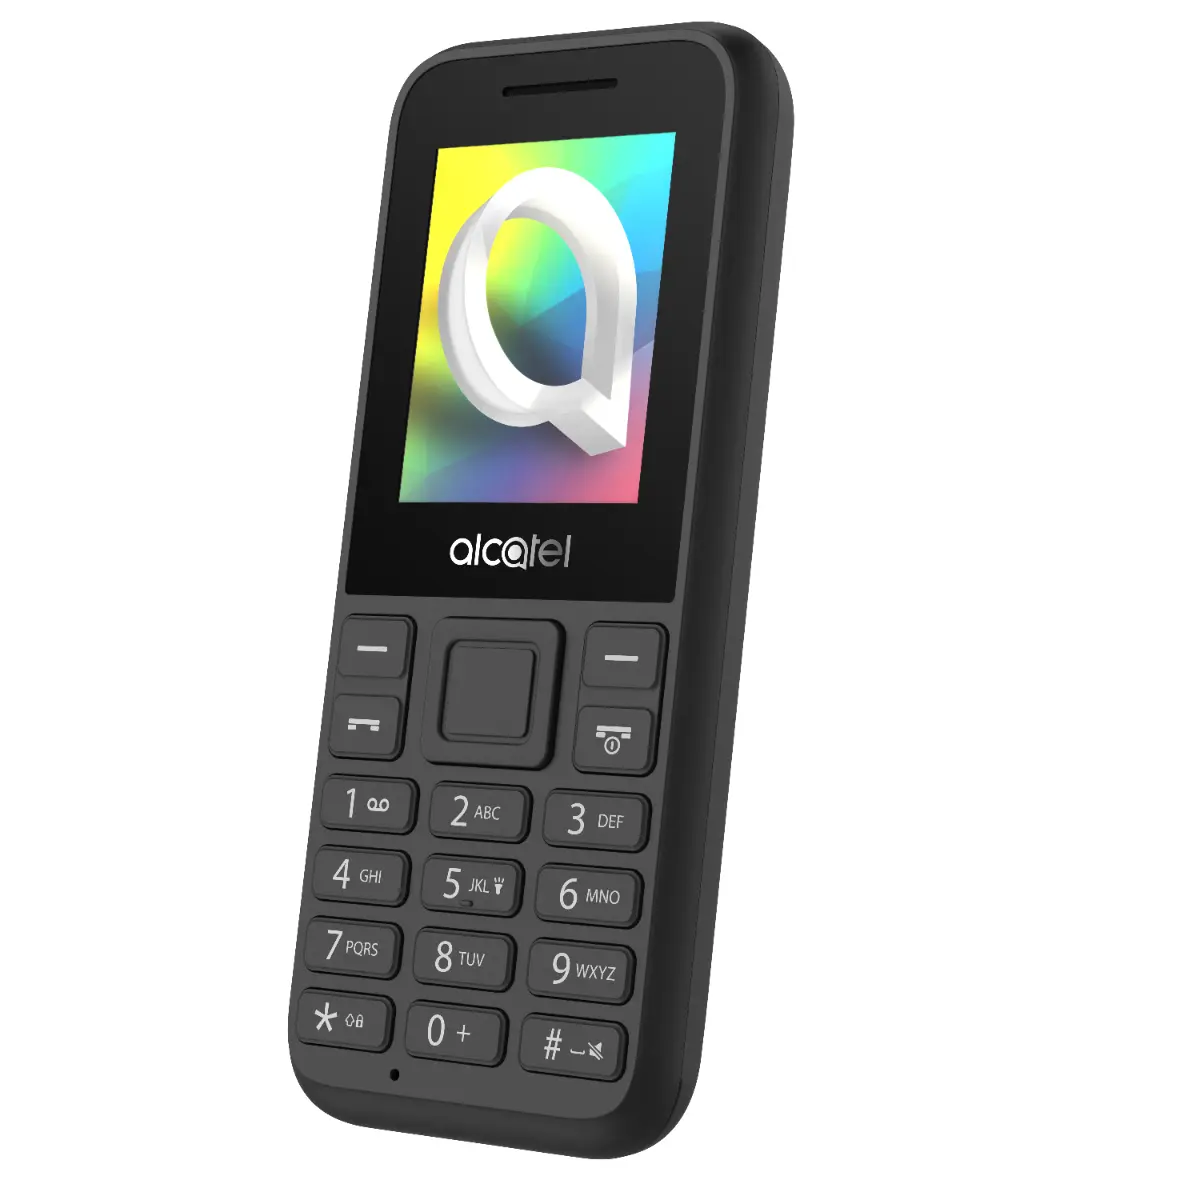 Telefon mobil Alcatel 1068, 2G, Dual Sim, Negru